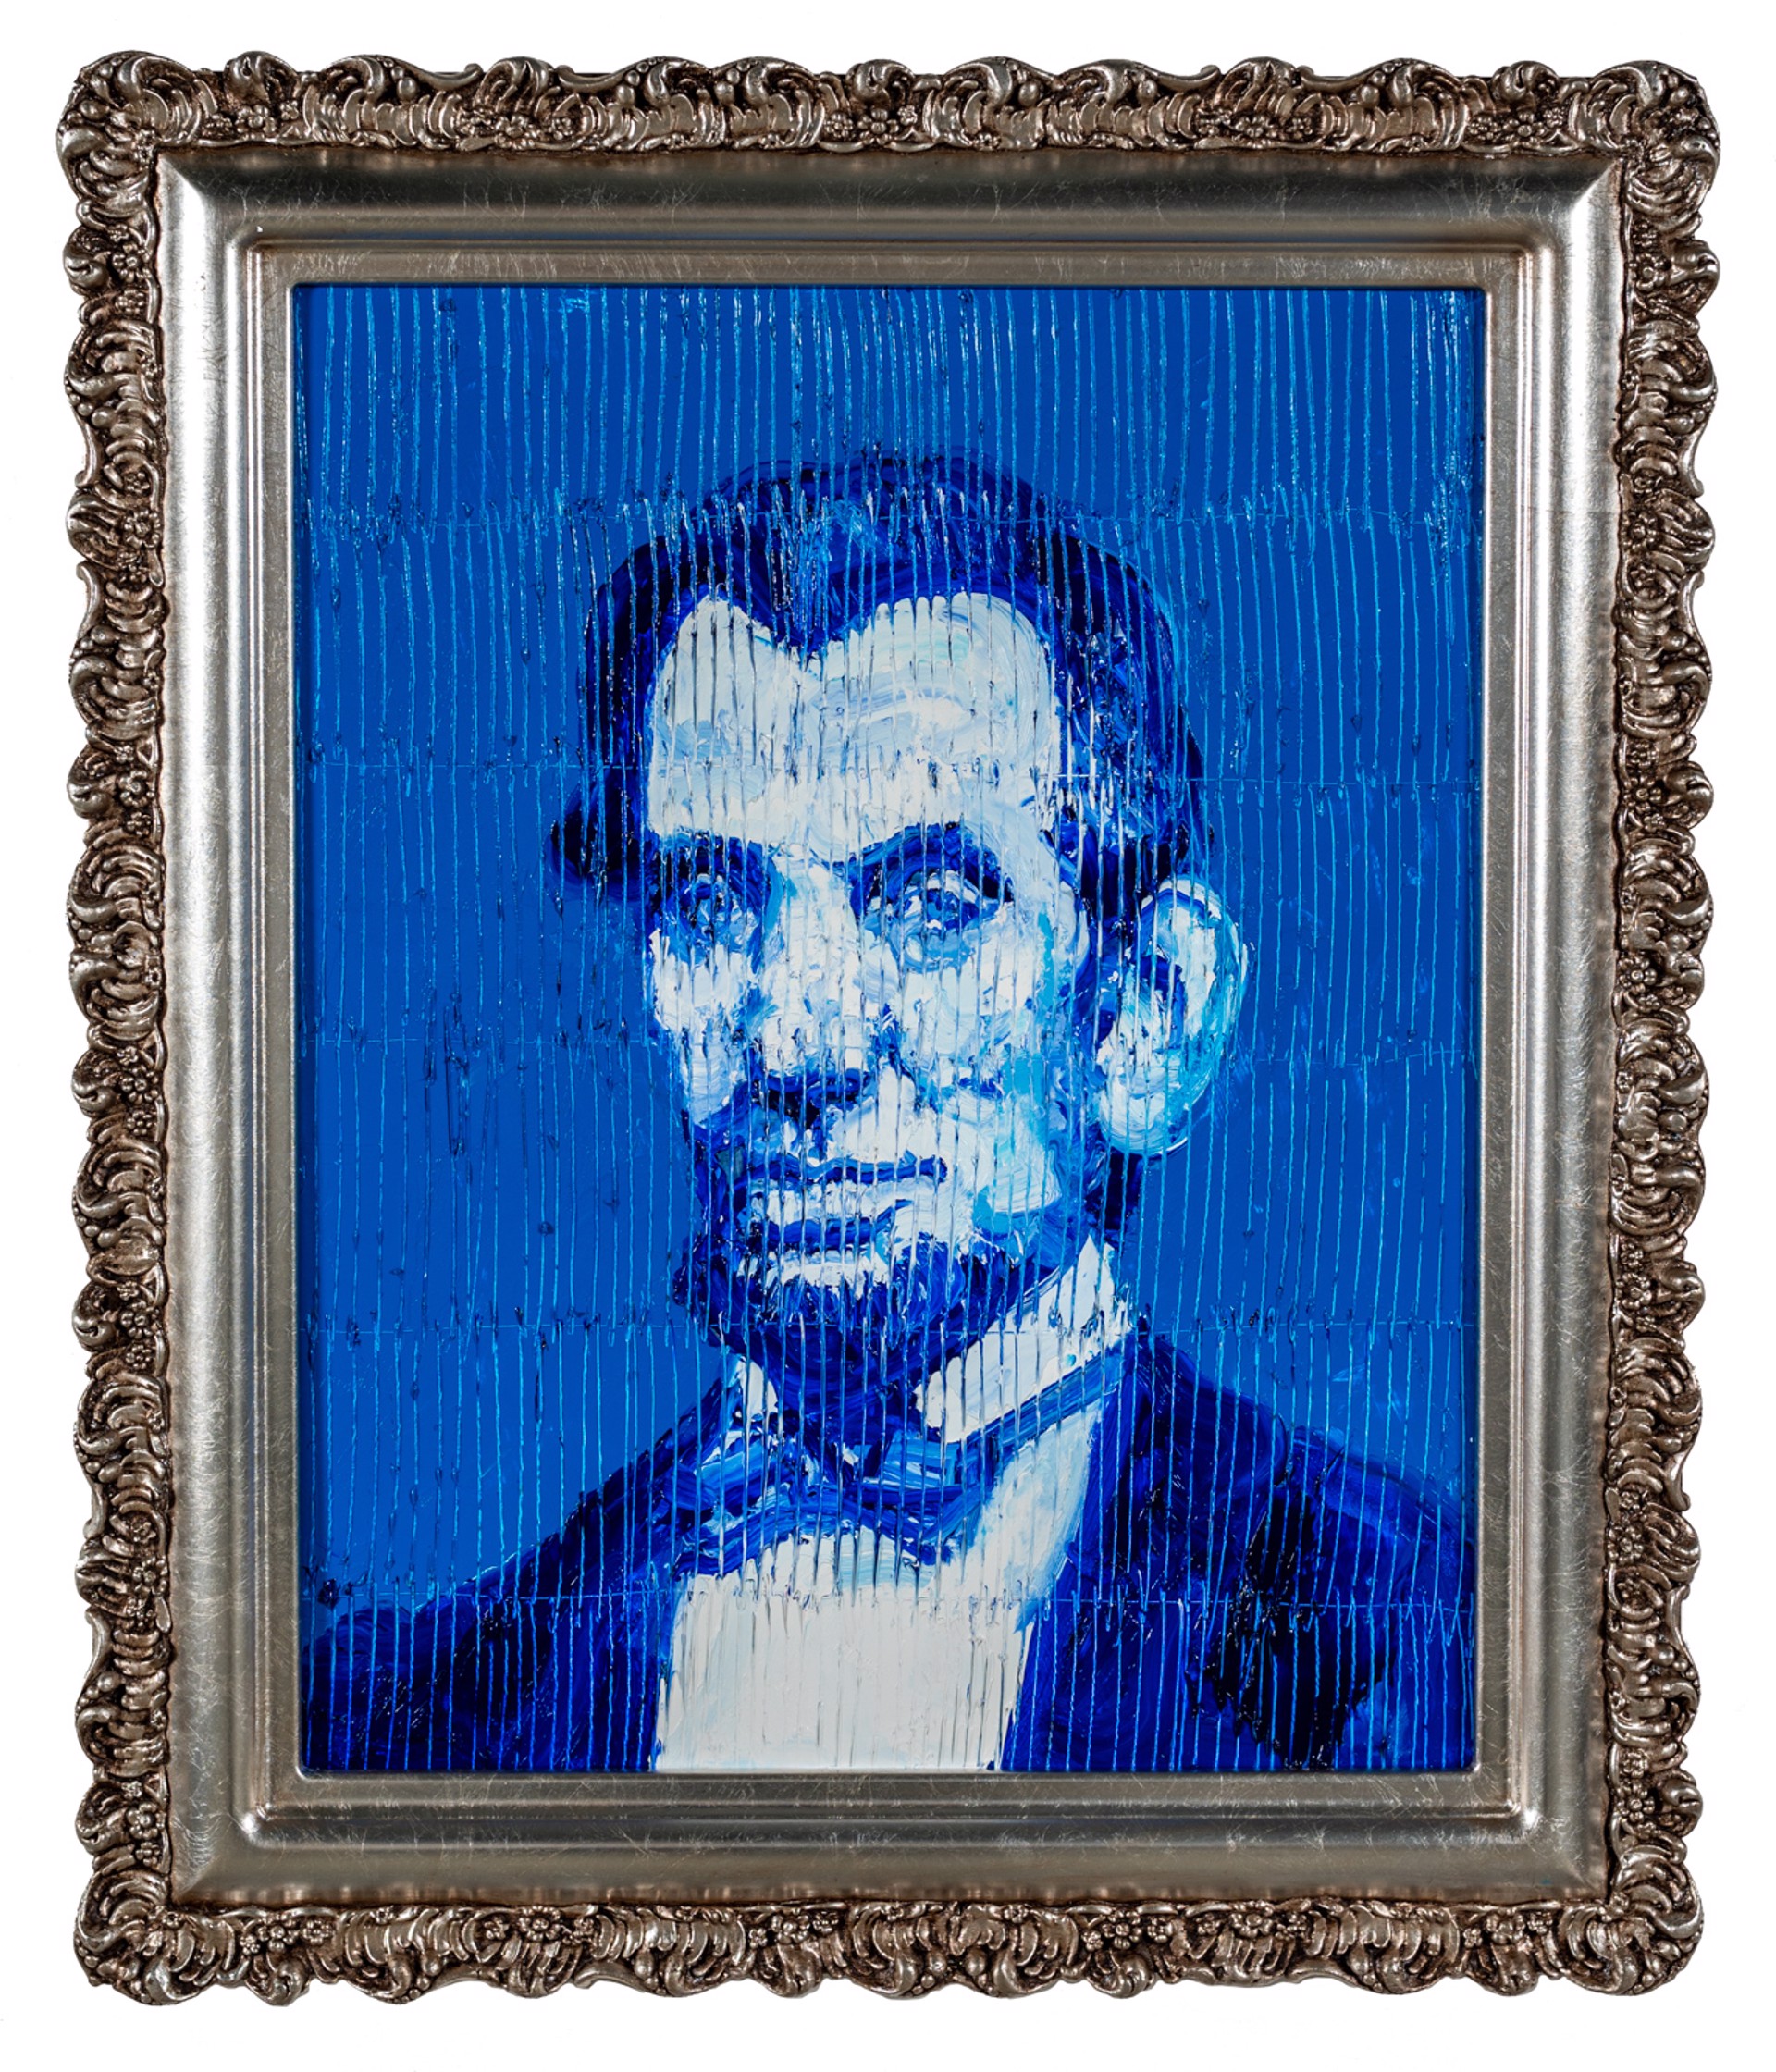 Hunt Slonem Art For Sale - Hunt Slonem Abraham Lincoln Blue, 2022 Oil on Wood20 x 16 in 